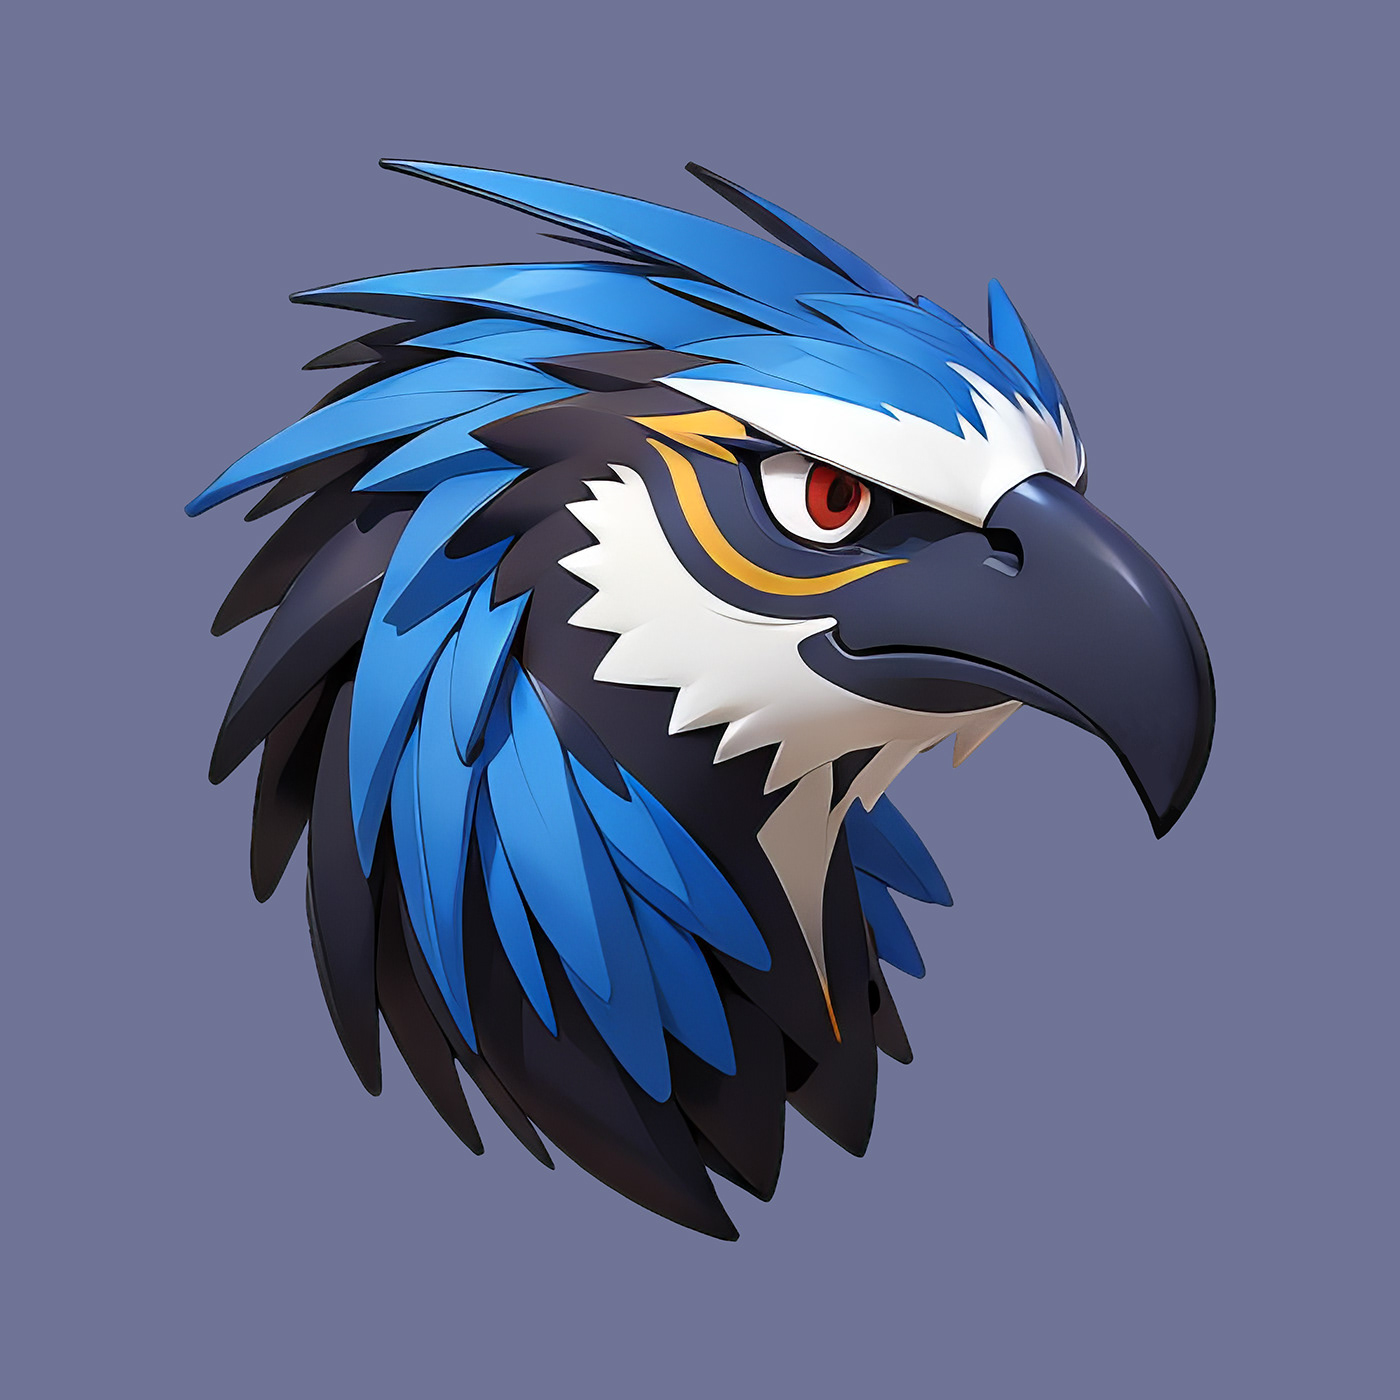 bird cartoon digital illustration eagle Mascot logo ILLUSTRATION  3D rendering pastel